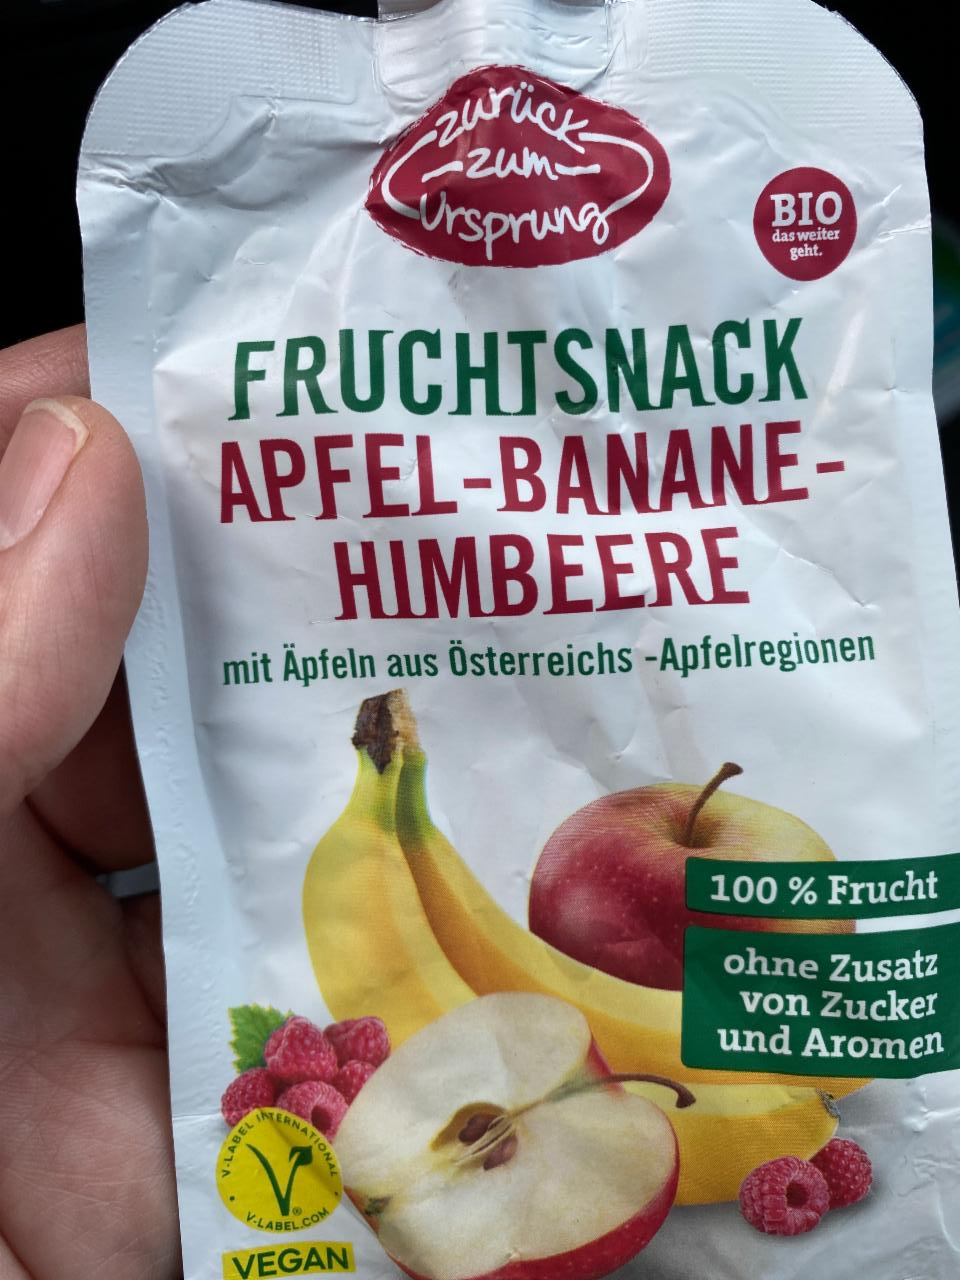 Képek - Fruchtsnack Apfel-Banane-Himbeere Zurück zum ursprung